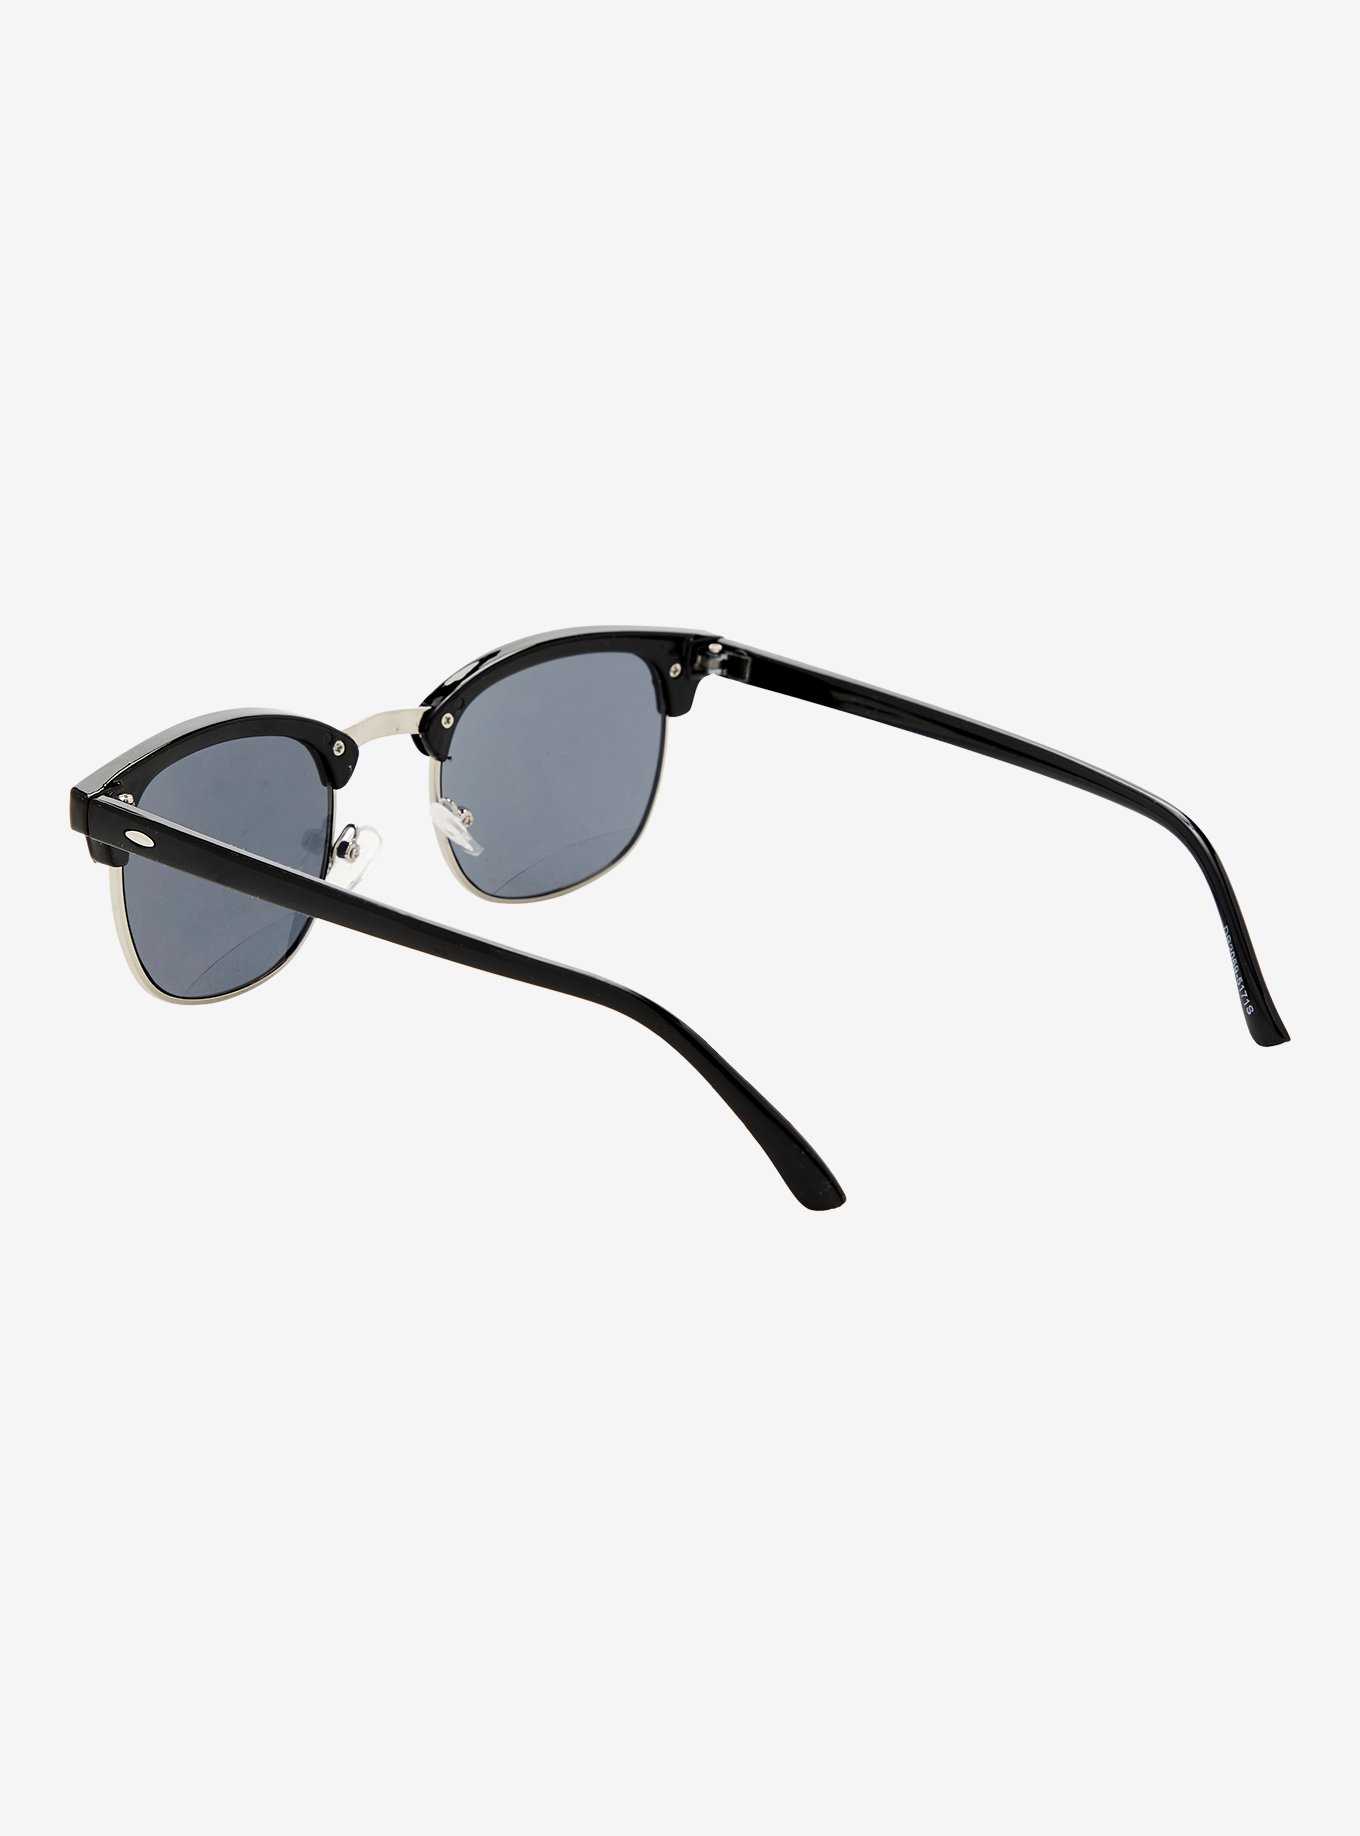 Black Square Sunglasses, , hi-res